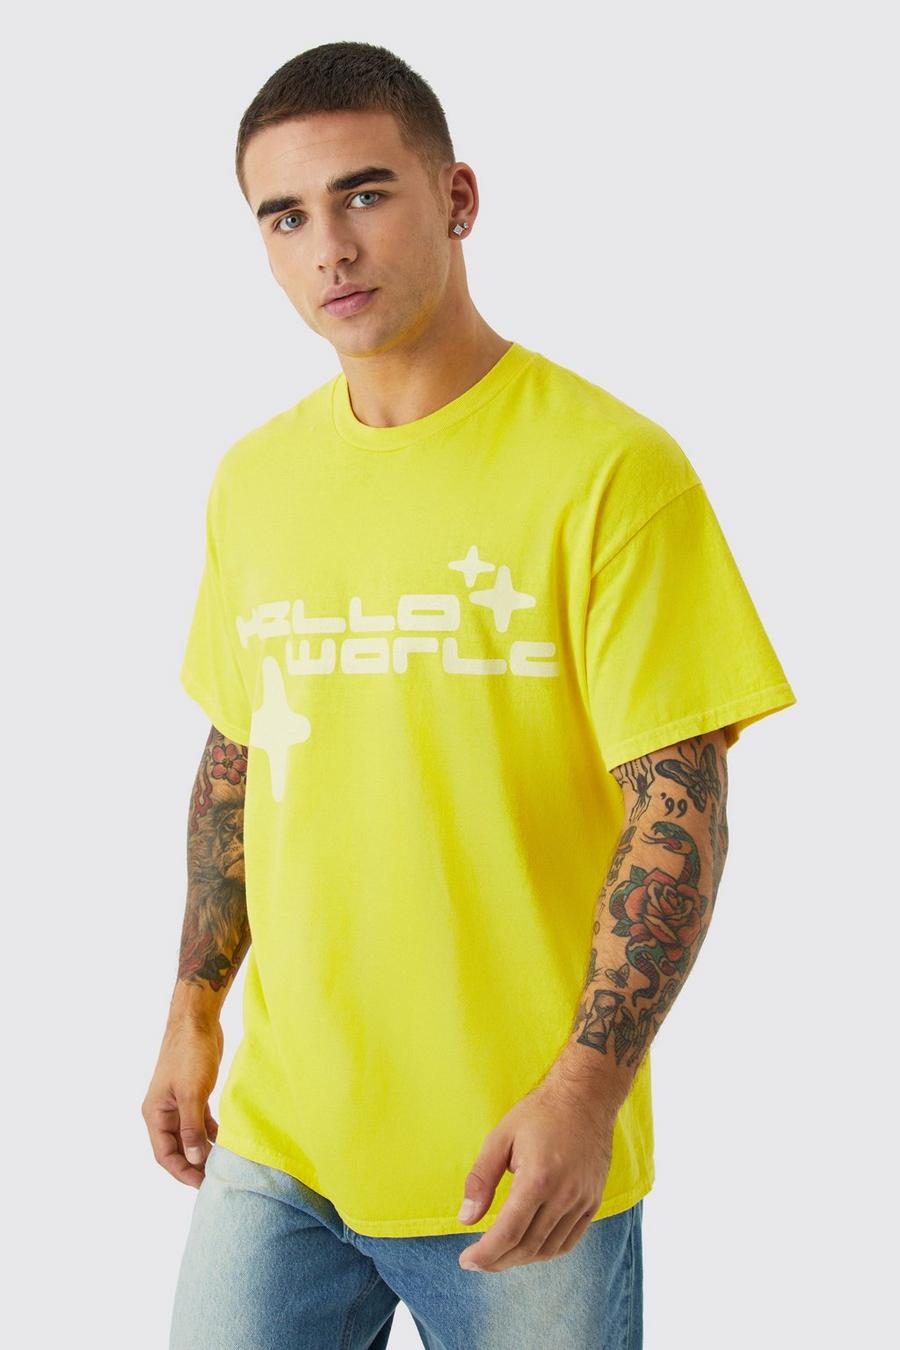 Yellow Oversized Worldwide Wash Graphic T-shirt